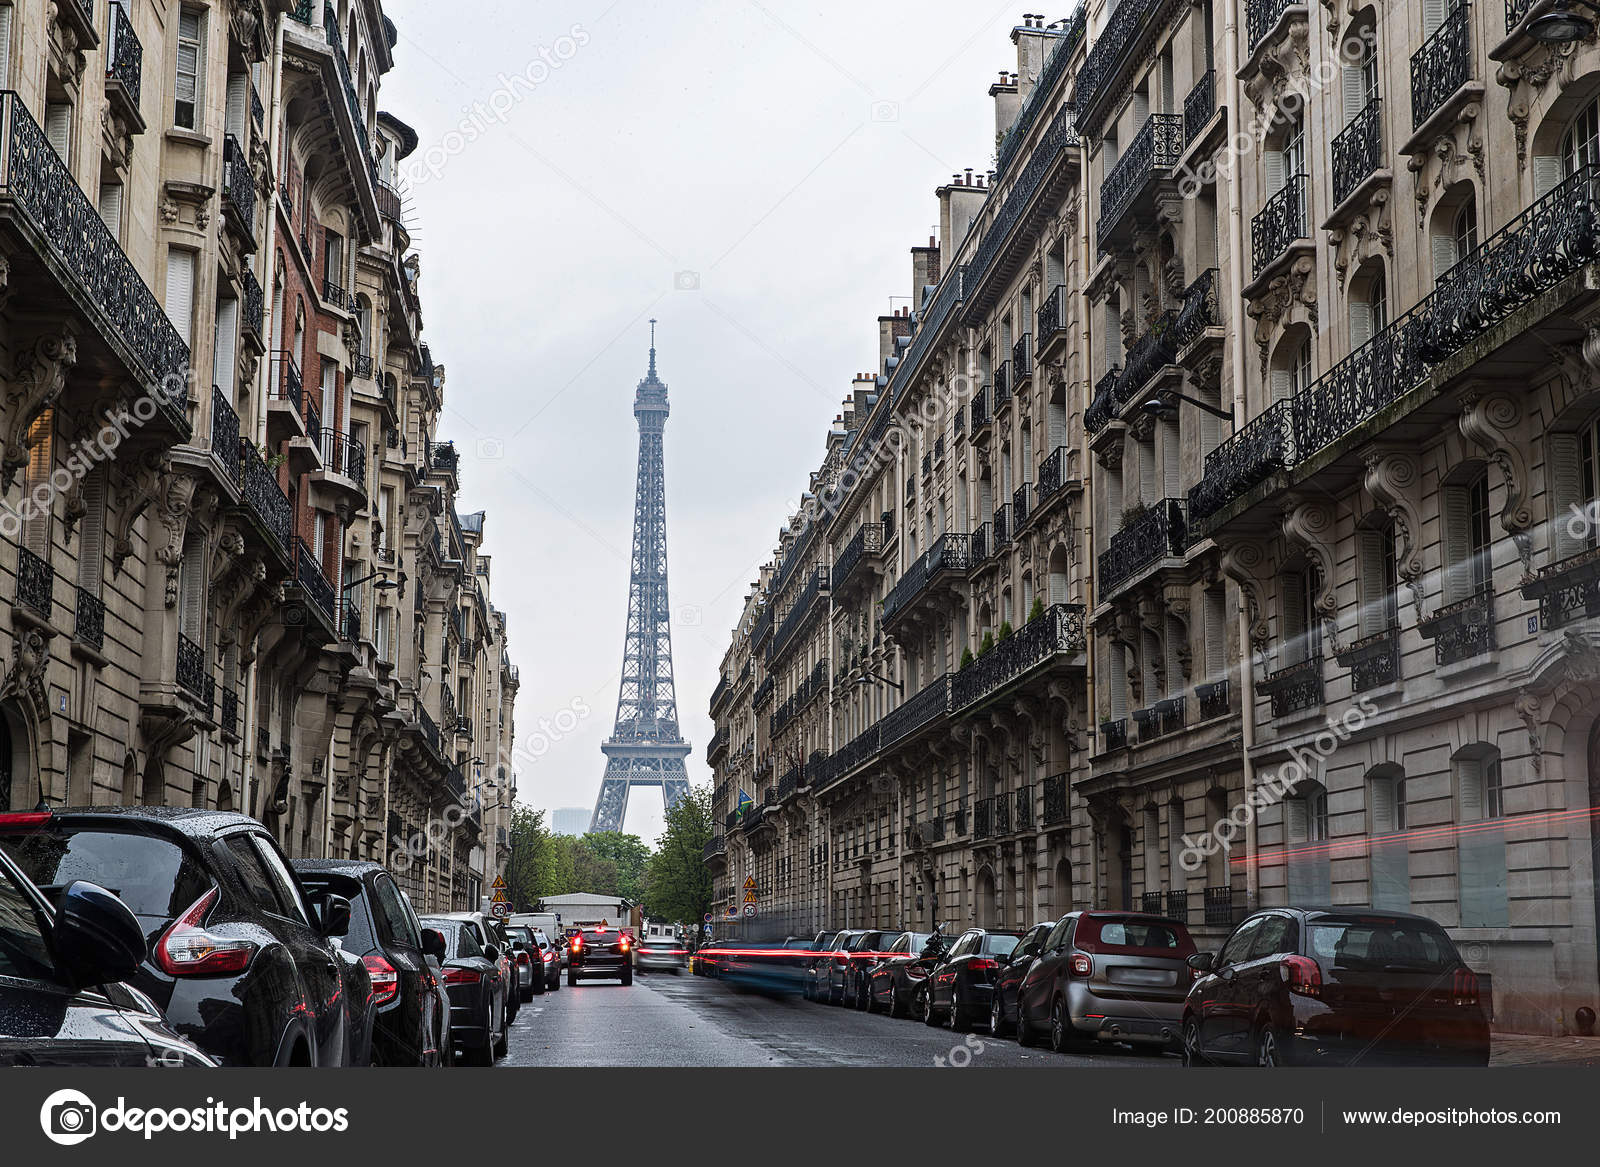 Pictures : paris france streets | Eiffel Tower Paris France View City